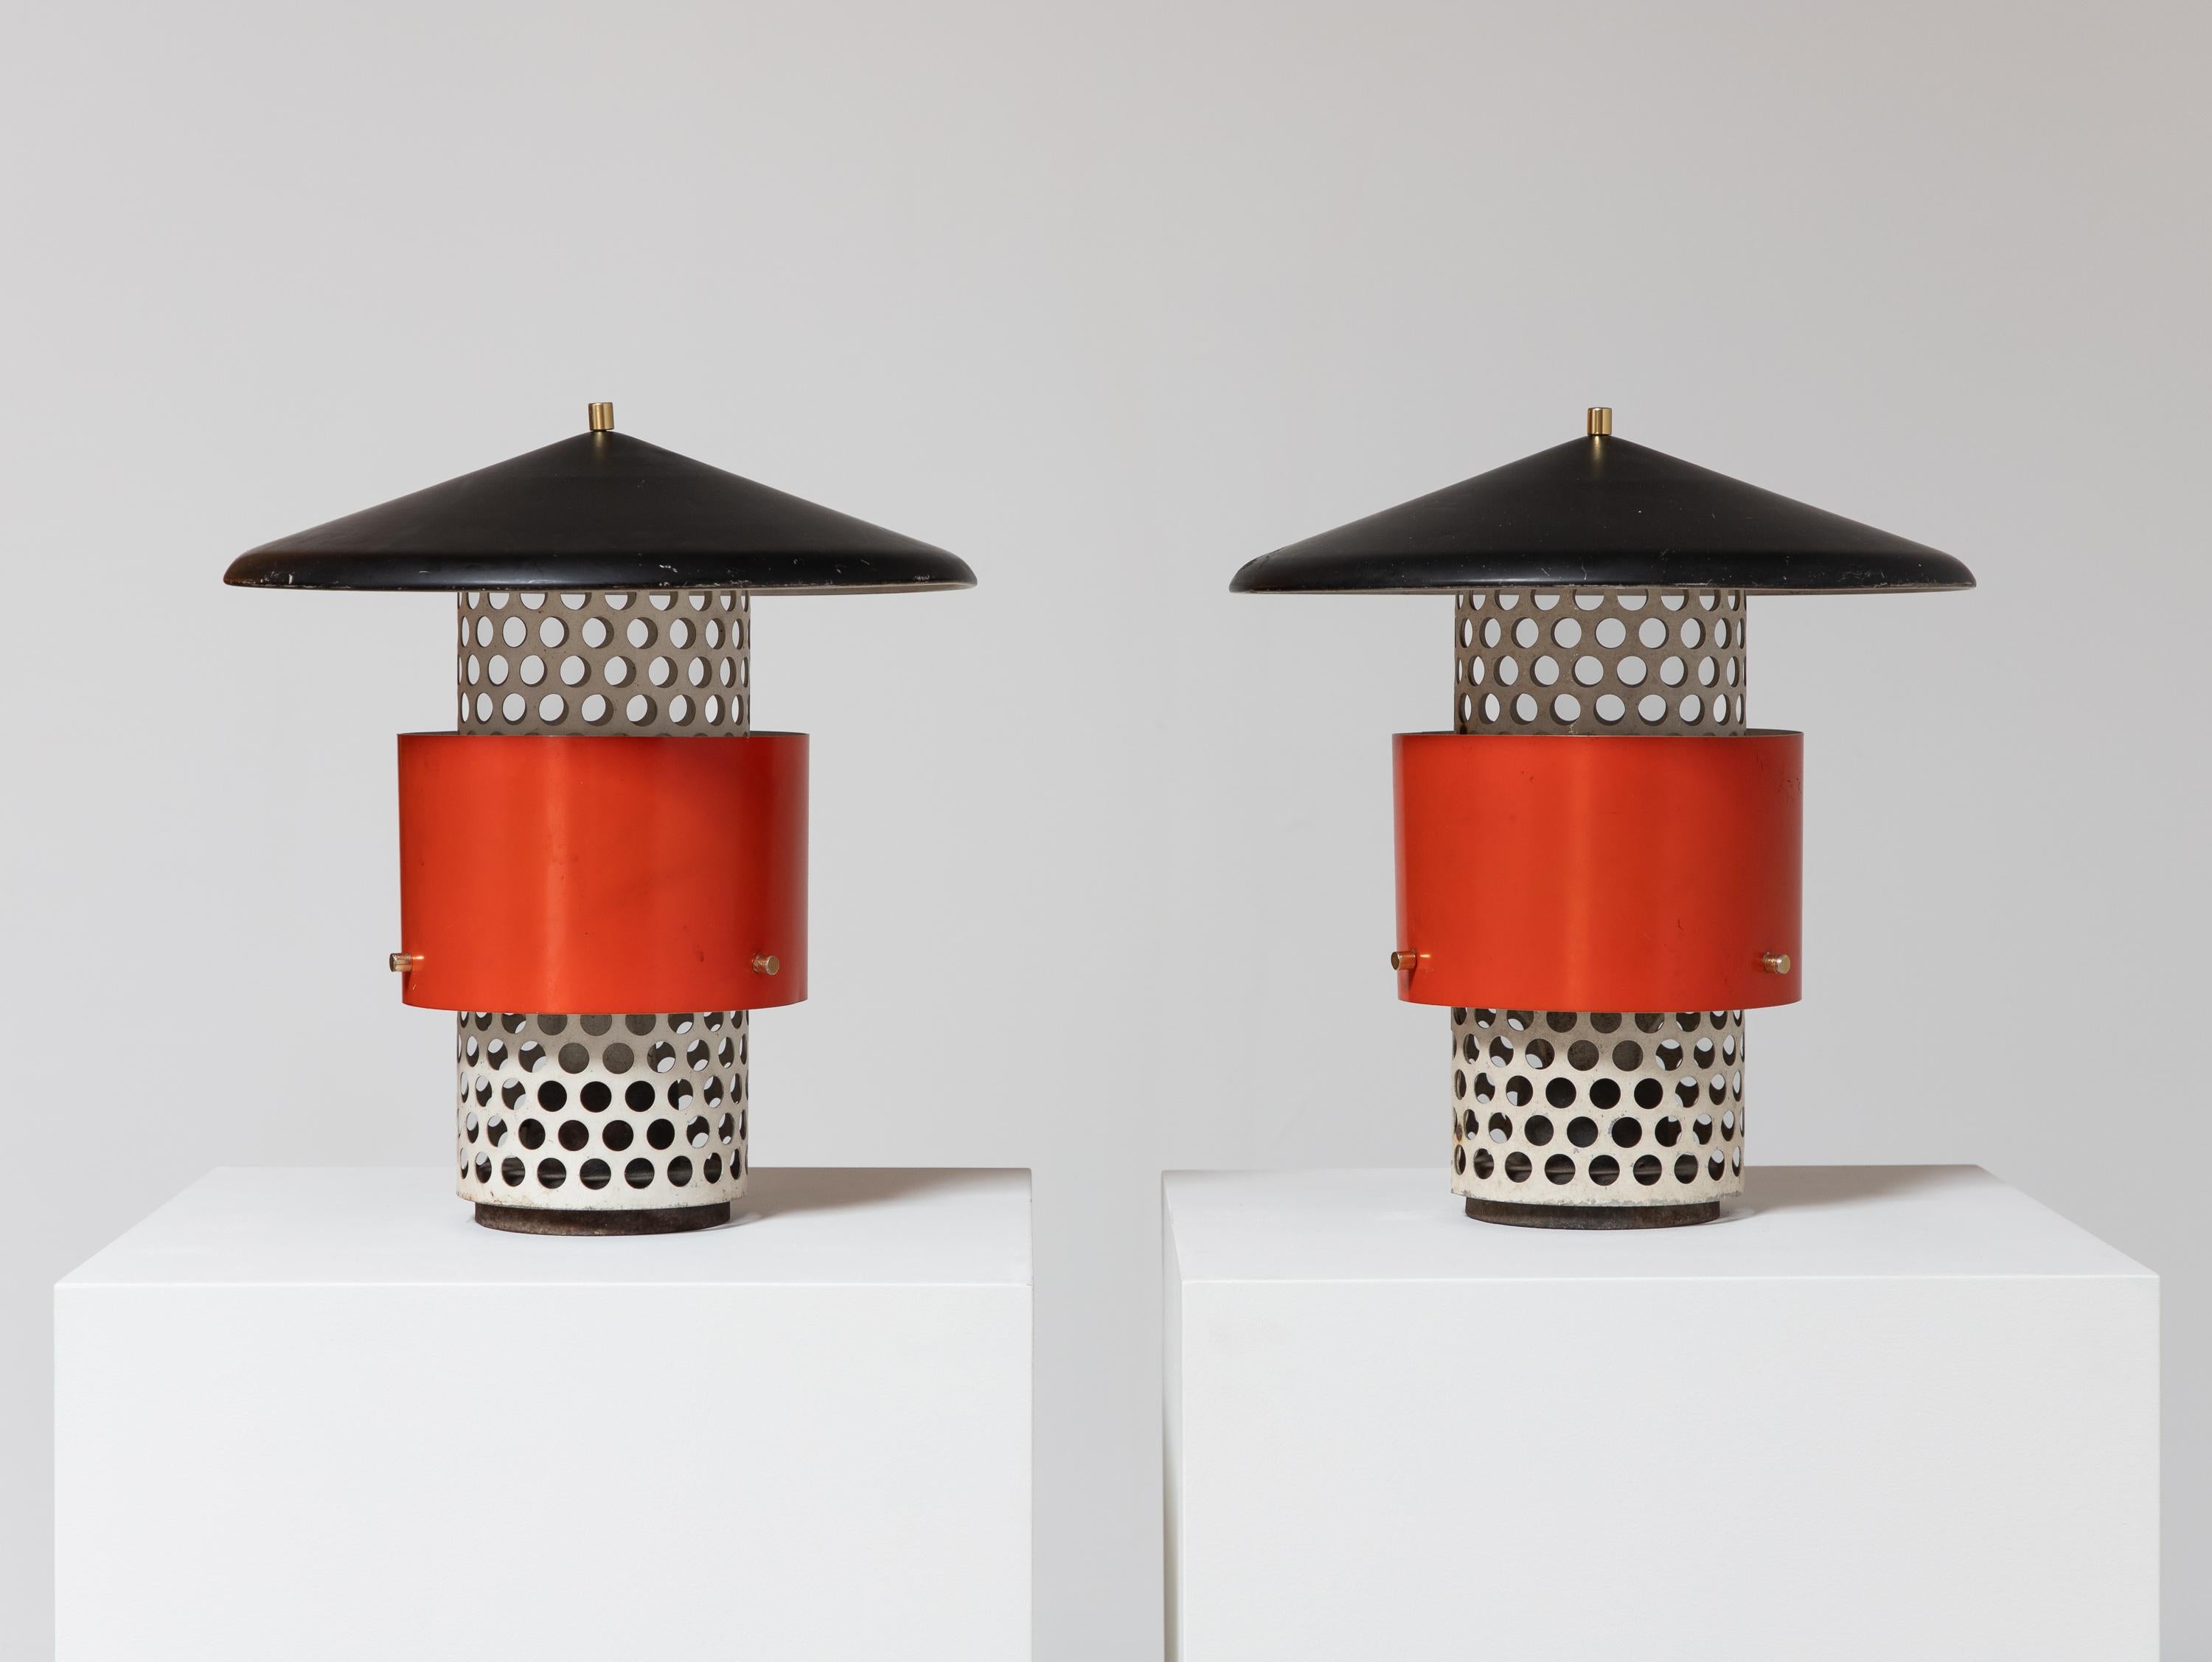 Rare paire de lampes d'extérieur Lytescape, souvent attribuées à Gino Sarfratti, fabriquées par Lightolier.  Ces lampes vintage sont dotées d'une base en métal perforé et d'un abat-jour vermillon brillant, rehaussé de ferrures et d'embouts en